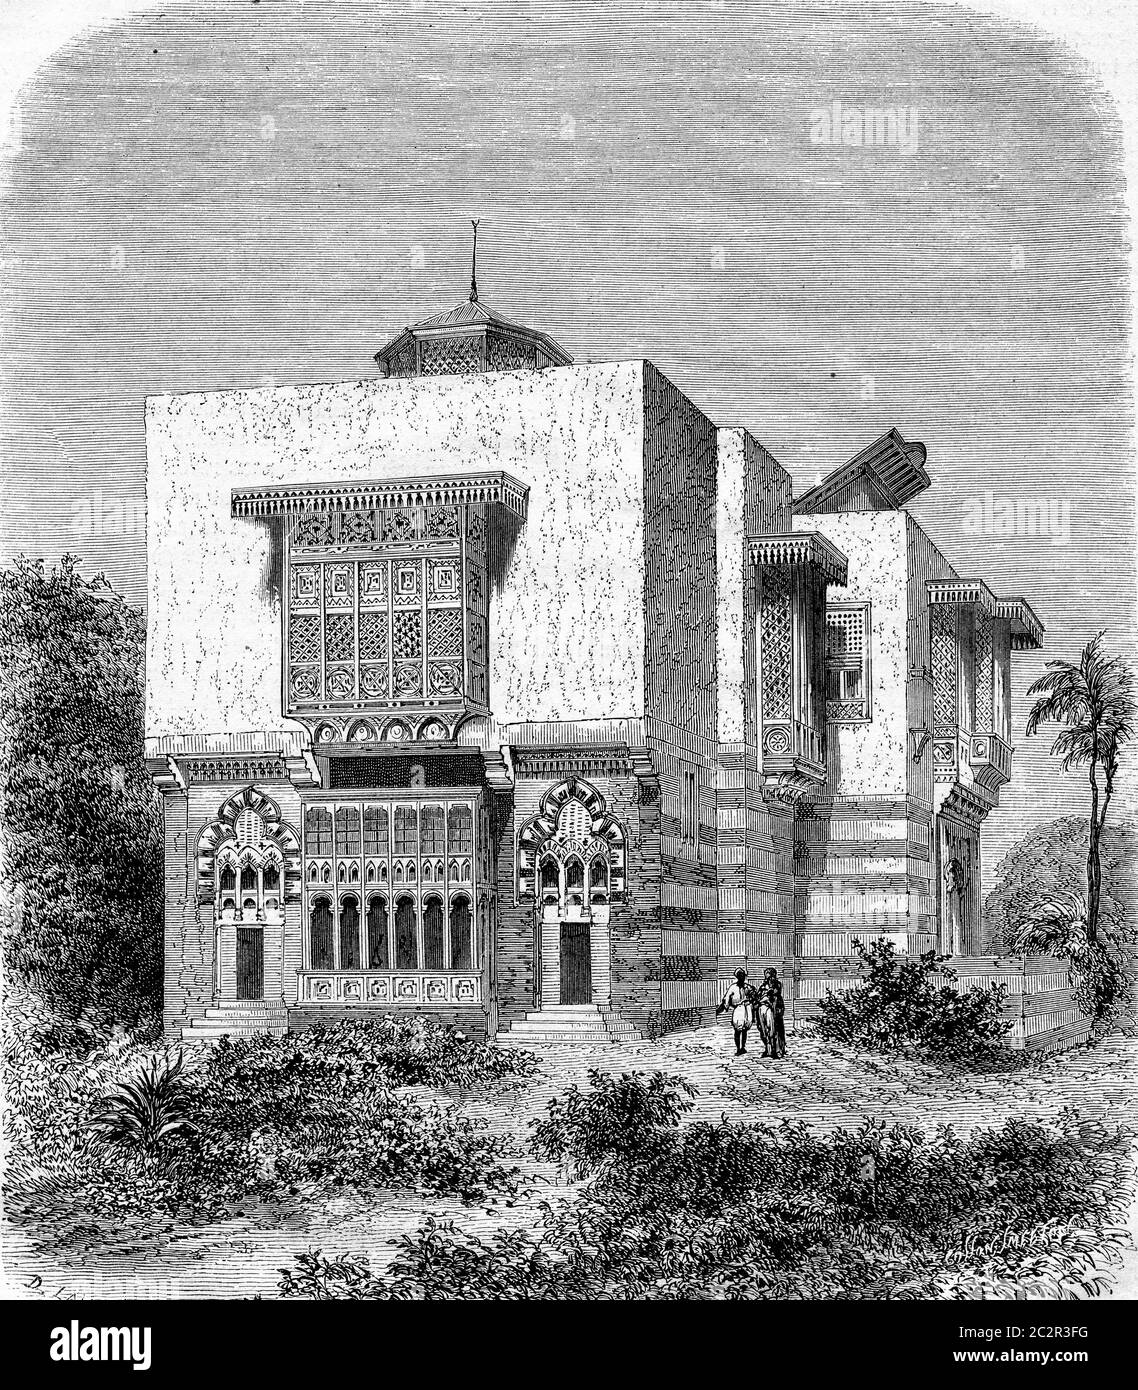 Weltausstellung von 1867, die ägyptische Caravanserai, Vintage graviert Illustration. Magasin Pittoresque 1867. Stockfoto